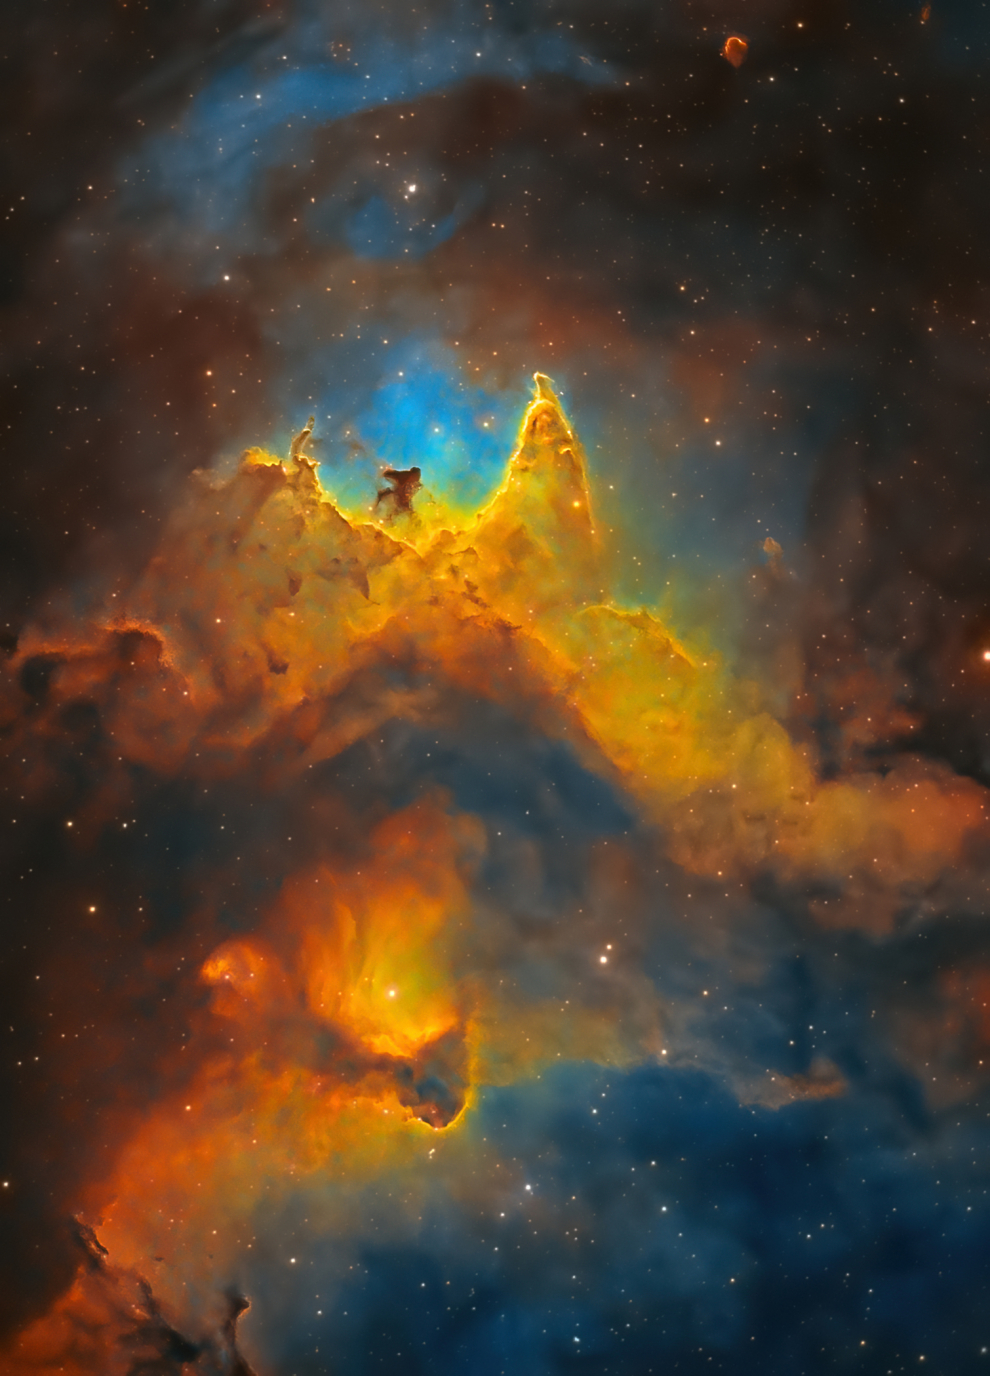 La Nebulosa del Alma es uno de esos objetivos increíbles que no importa hacia dónde apunte su telescopio, siempre hay algunas estructuras y detalles increíbles por descubrir. Este fue el caso de esta imagen. Con 14 horas de exposición, comenzaron a emerger detalles débiles y estructuras en las profundidades de la nebulosa. Notting Hill, Londres, Reino Unido, 25 a 27 de febrero de 2021